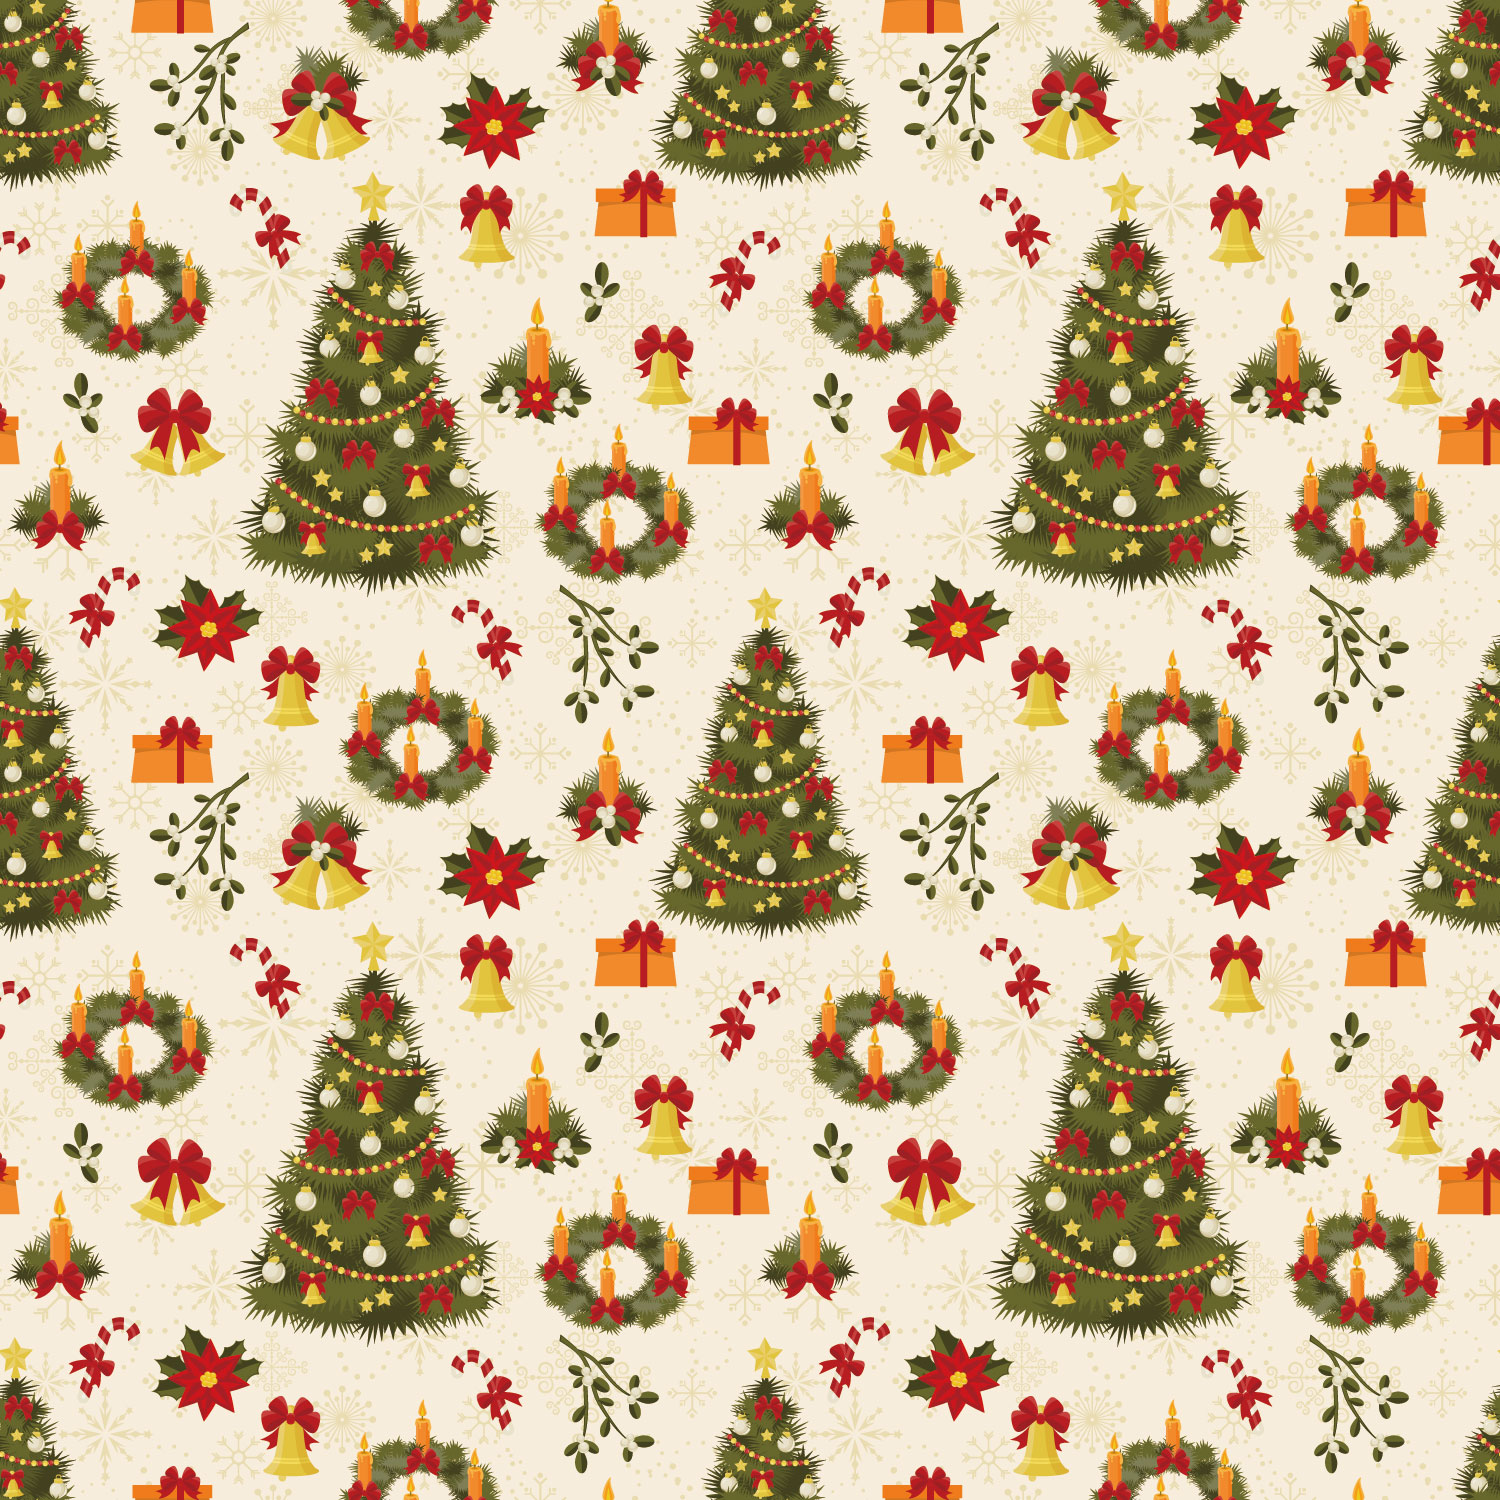 クリスマスのイラストno 218 壁紙 ツリーパターン 無料のフリー素材集 花鳥風月